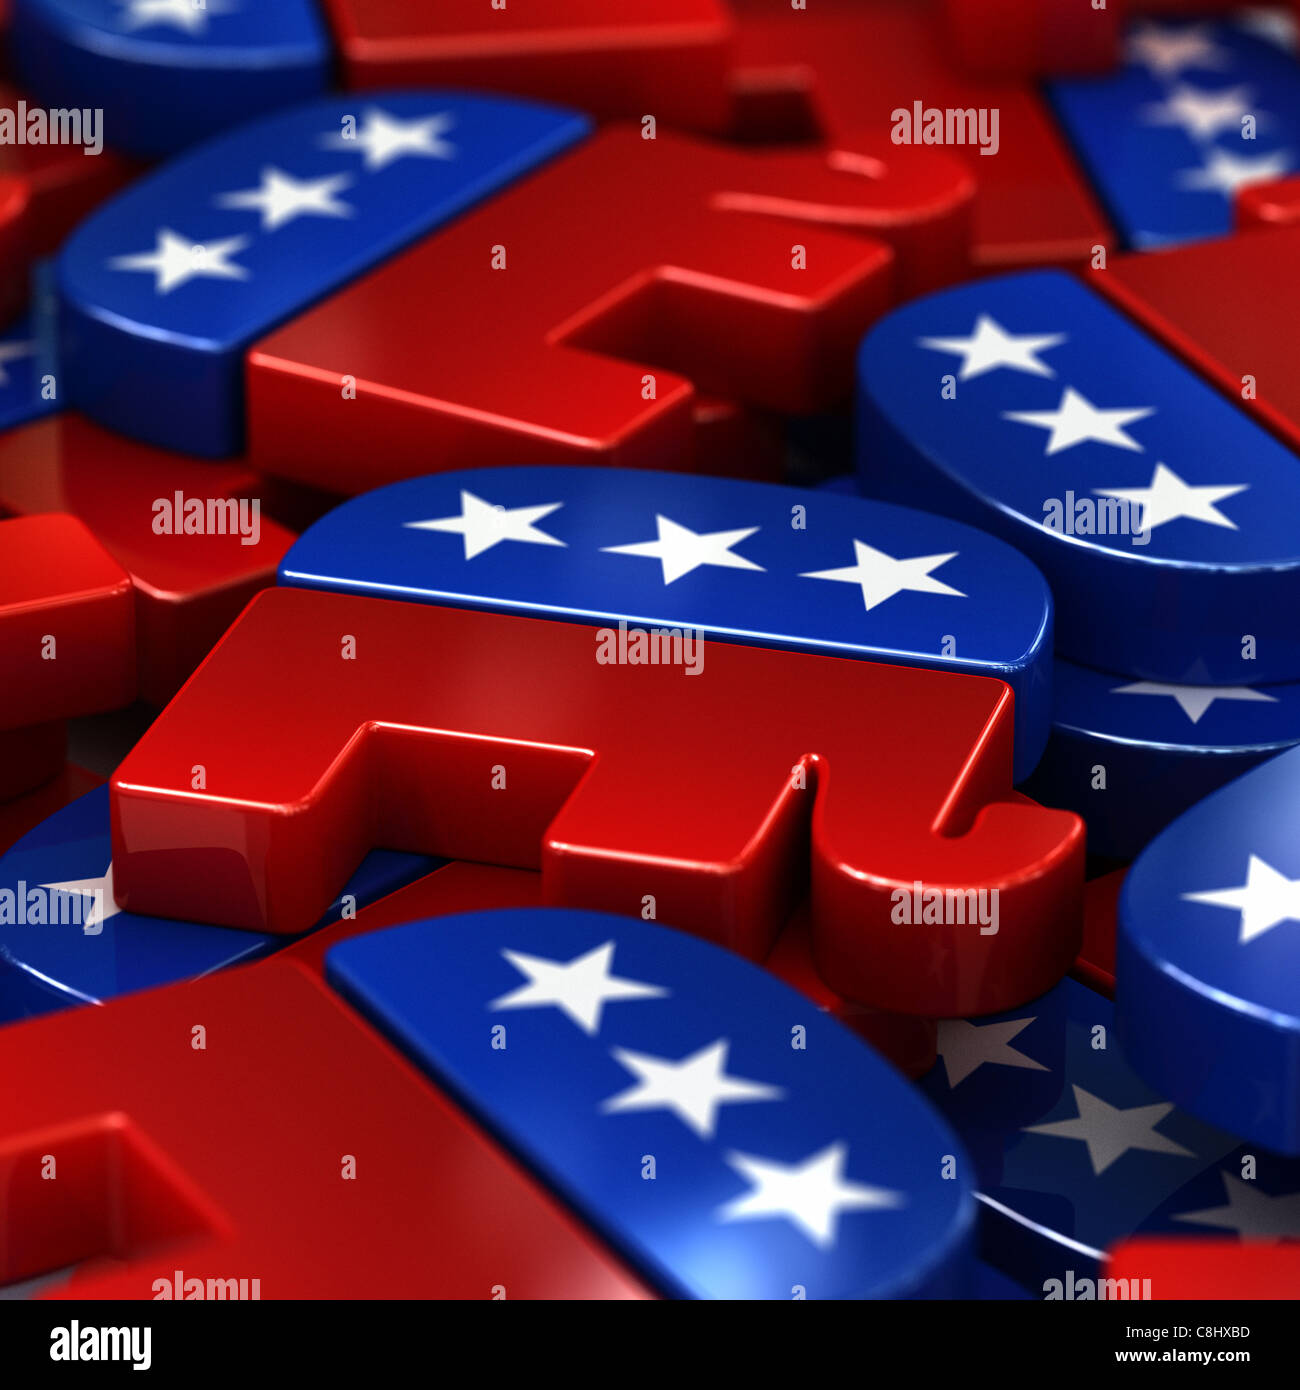 American republican party logos Stock Photo